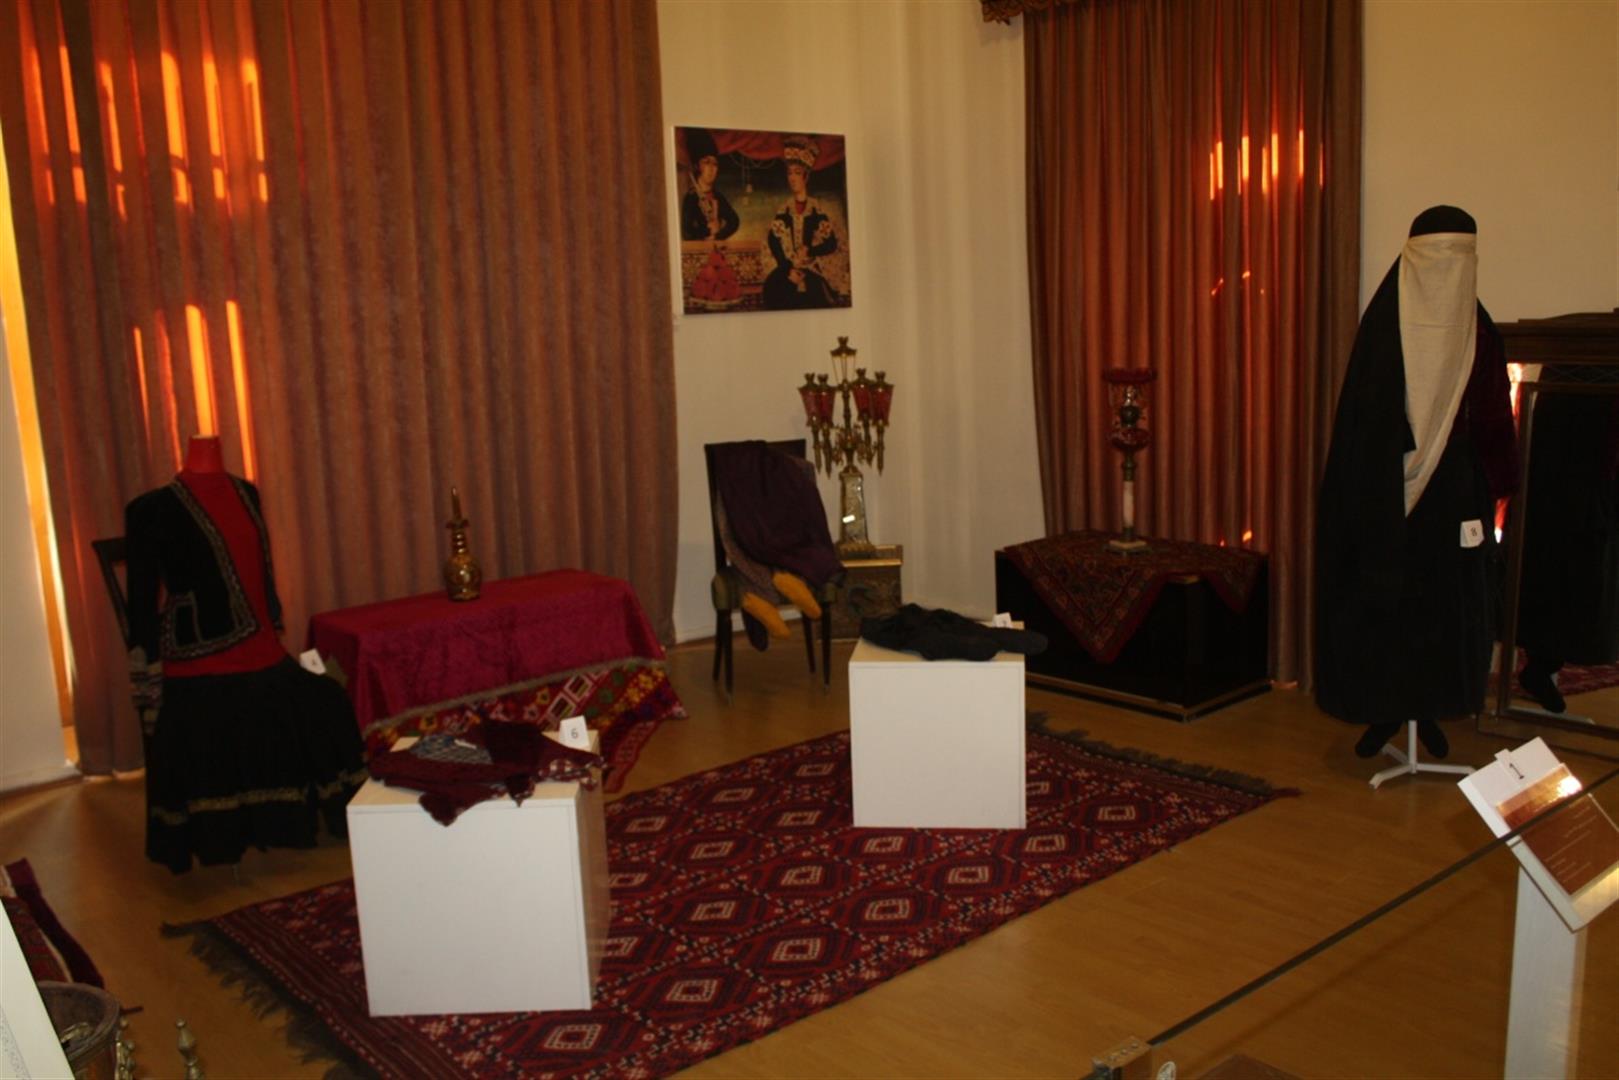 طبقه همکف موزه پوشاک سلطنتی سعدآباد بازگشایی میشود   